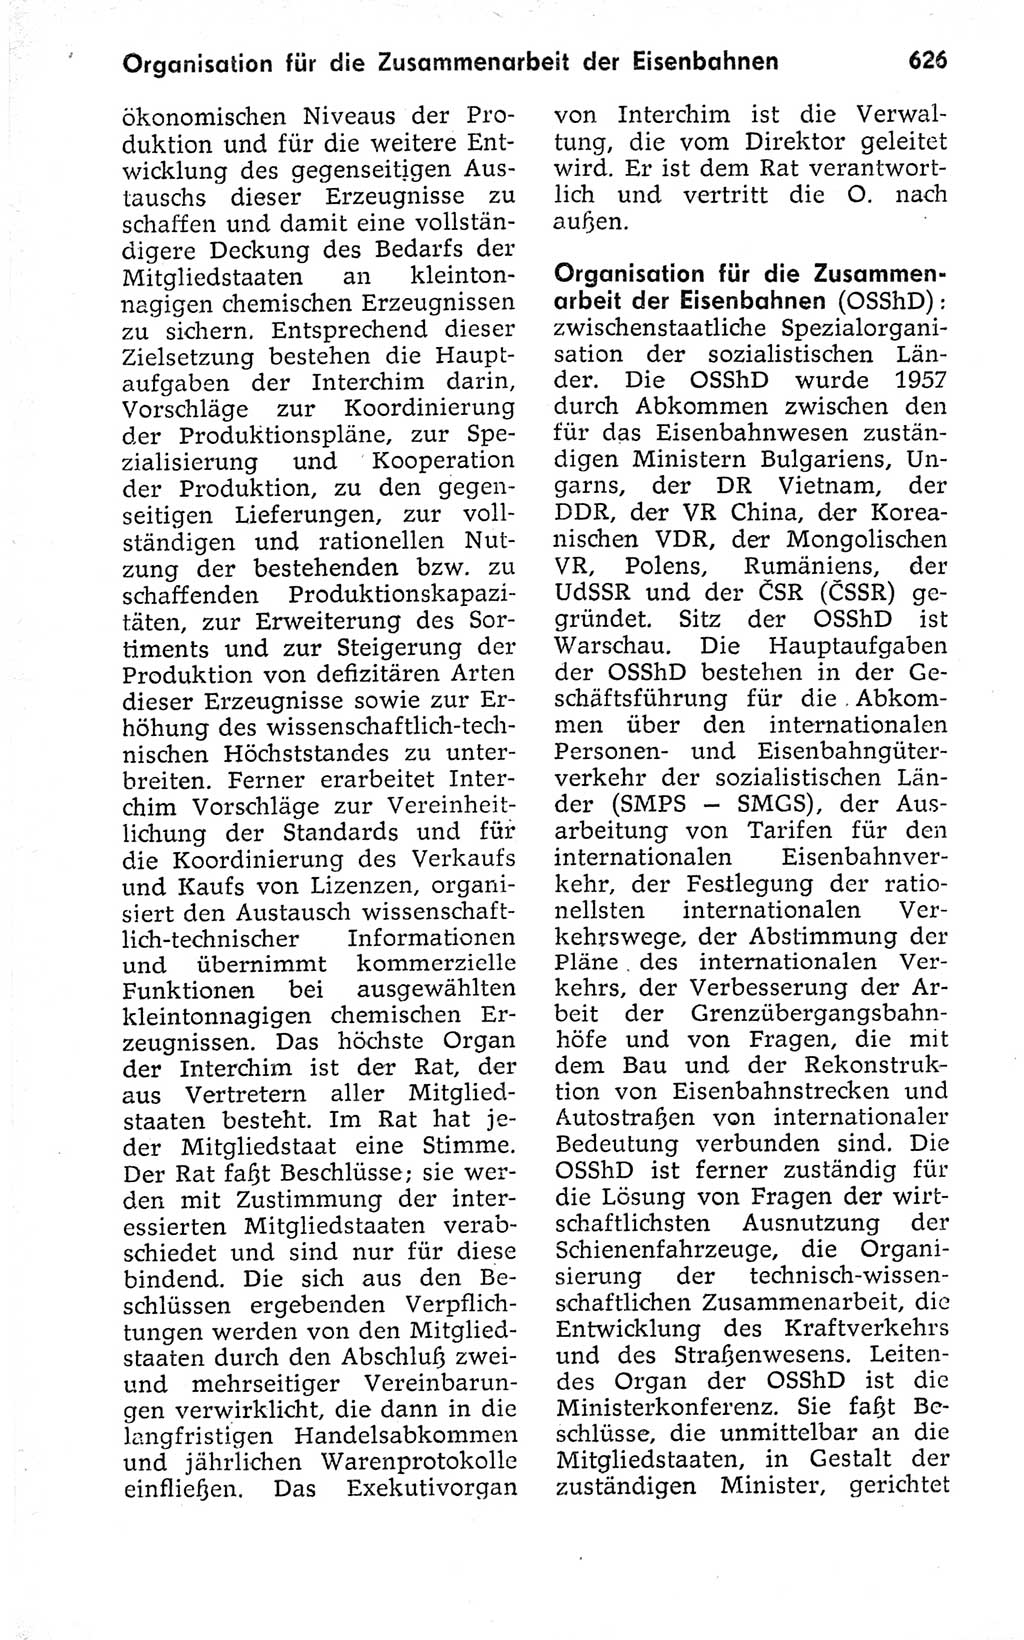 Kleines politisches Wörterbuch [Deutsche Demokratische Republik (DDR)] 1973, Seite 626 (Kl. pol. Wb. DDR 1973, S. 626)